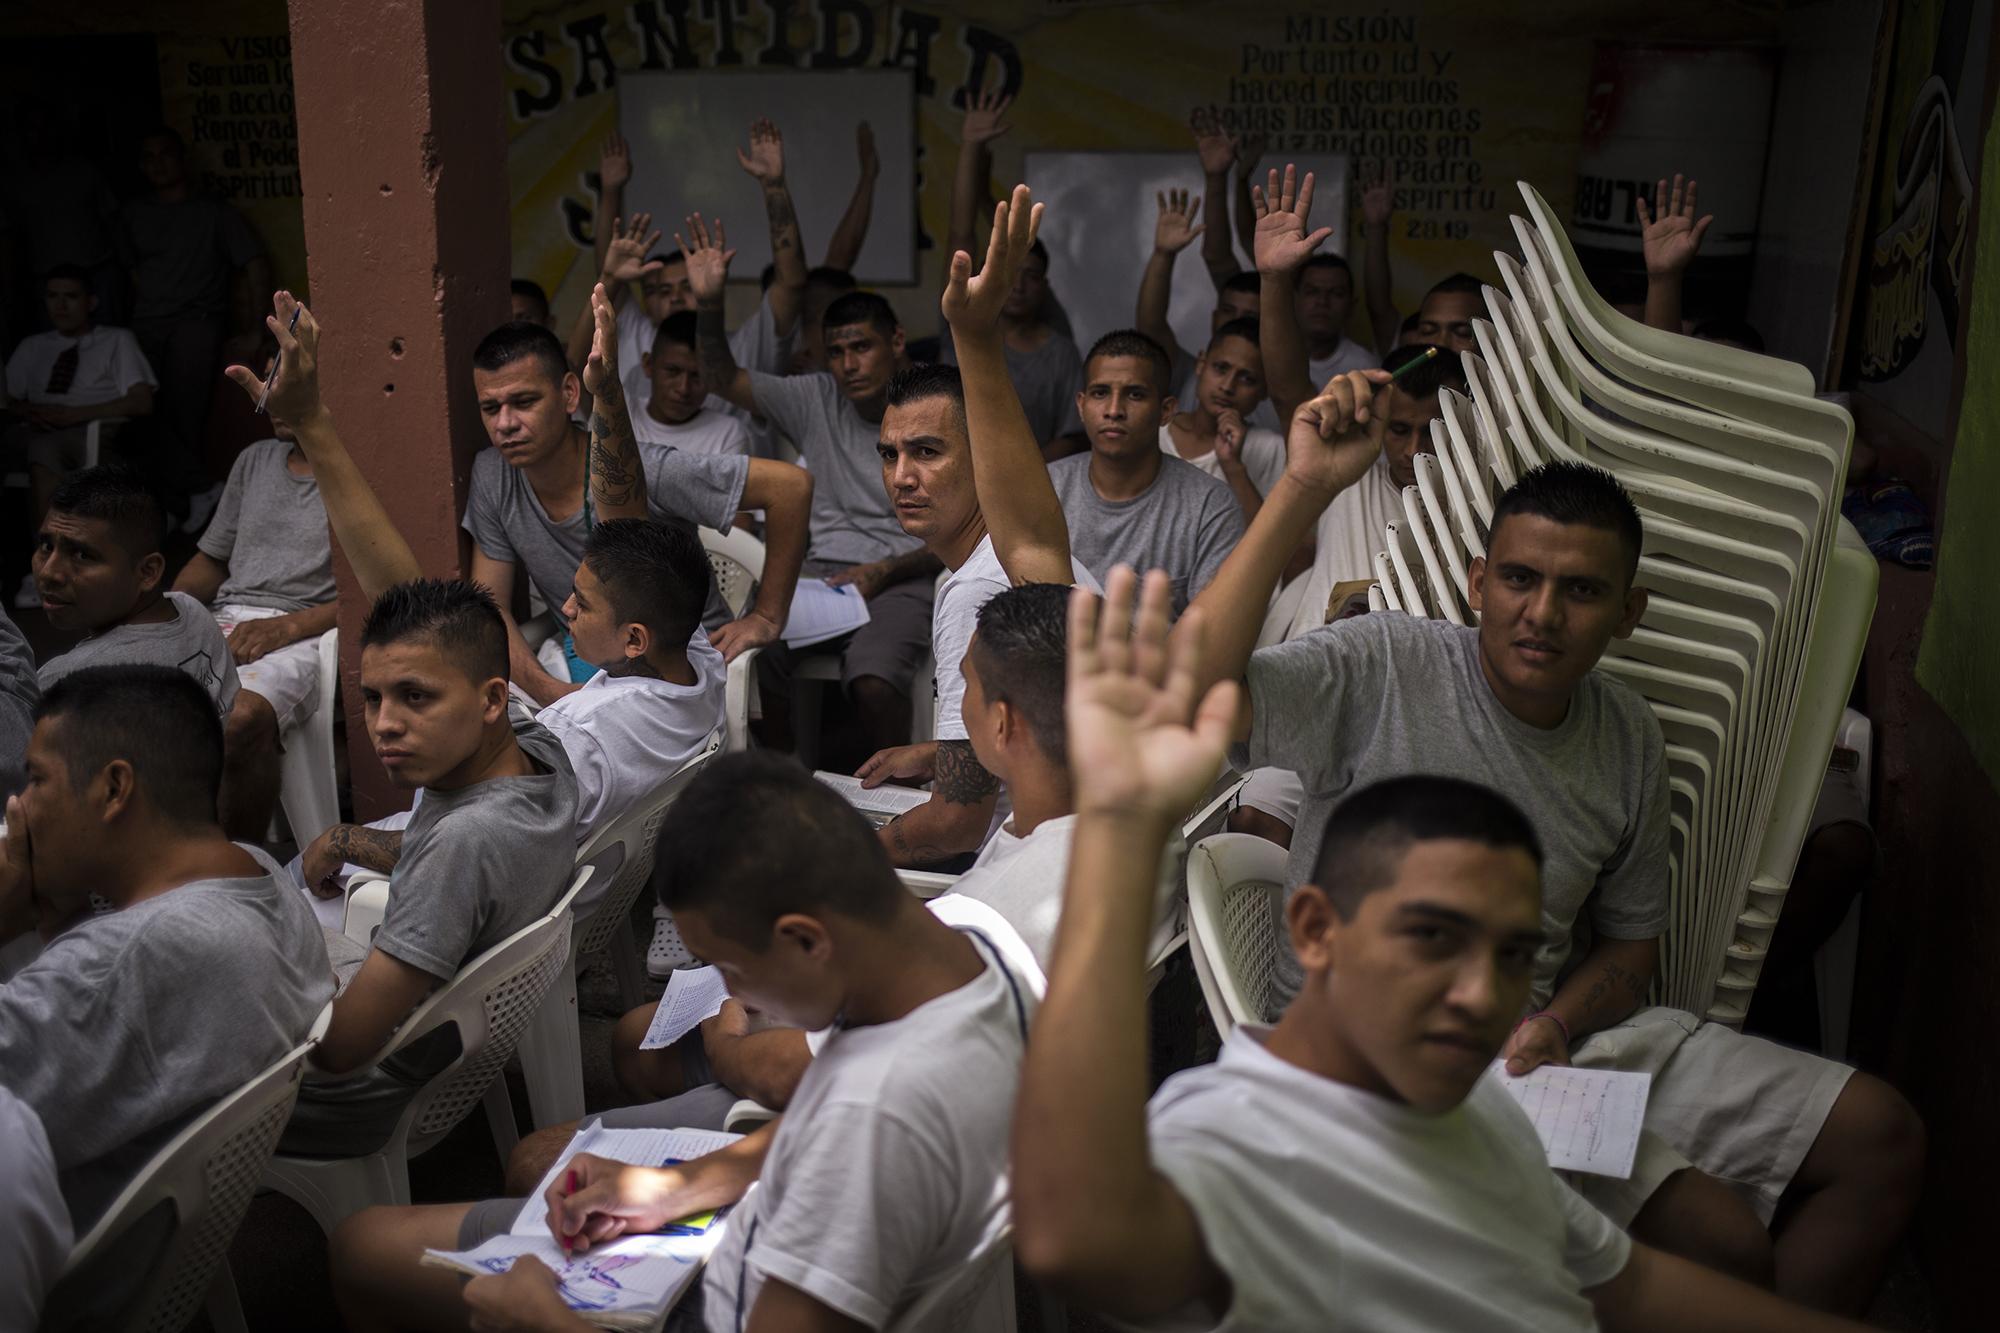 Exmiembros de la MS-13 levantan la mano para identificarse ante la pregunta del fotoperiodista. Unos 150 ex emeeses conviven con más de 1 000 ex dieciocheros en el penal de Gotera. Foto de El Faro: Víctor Peña. 